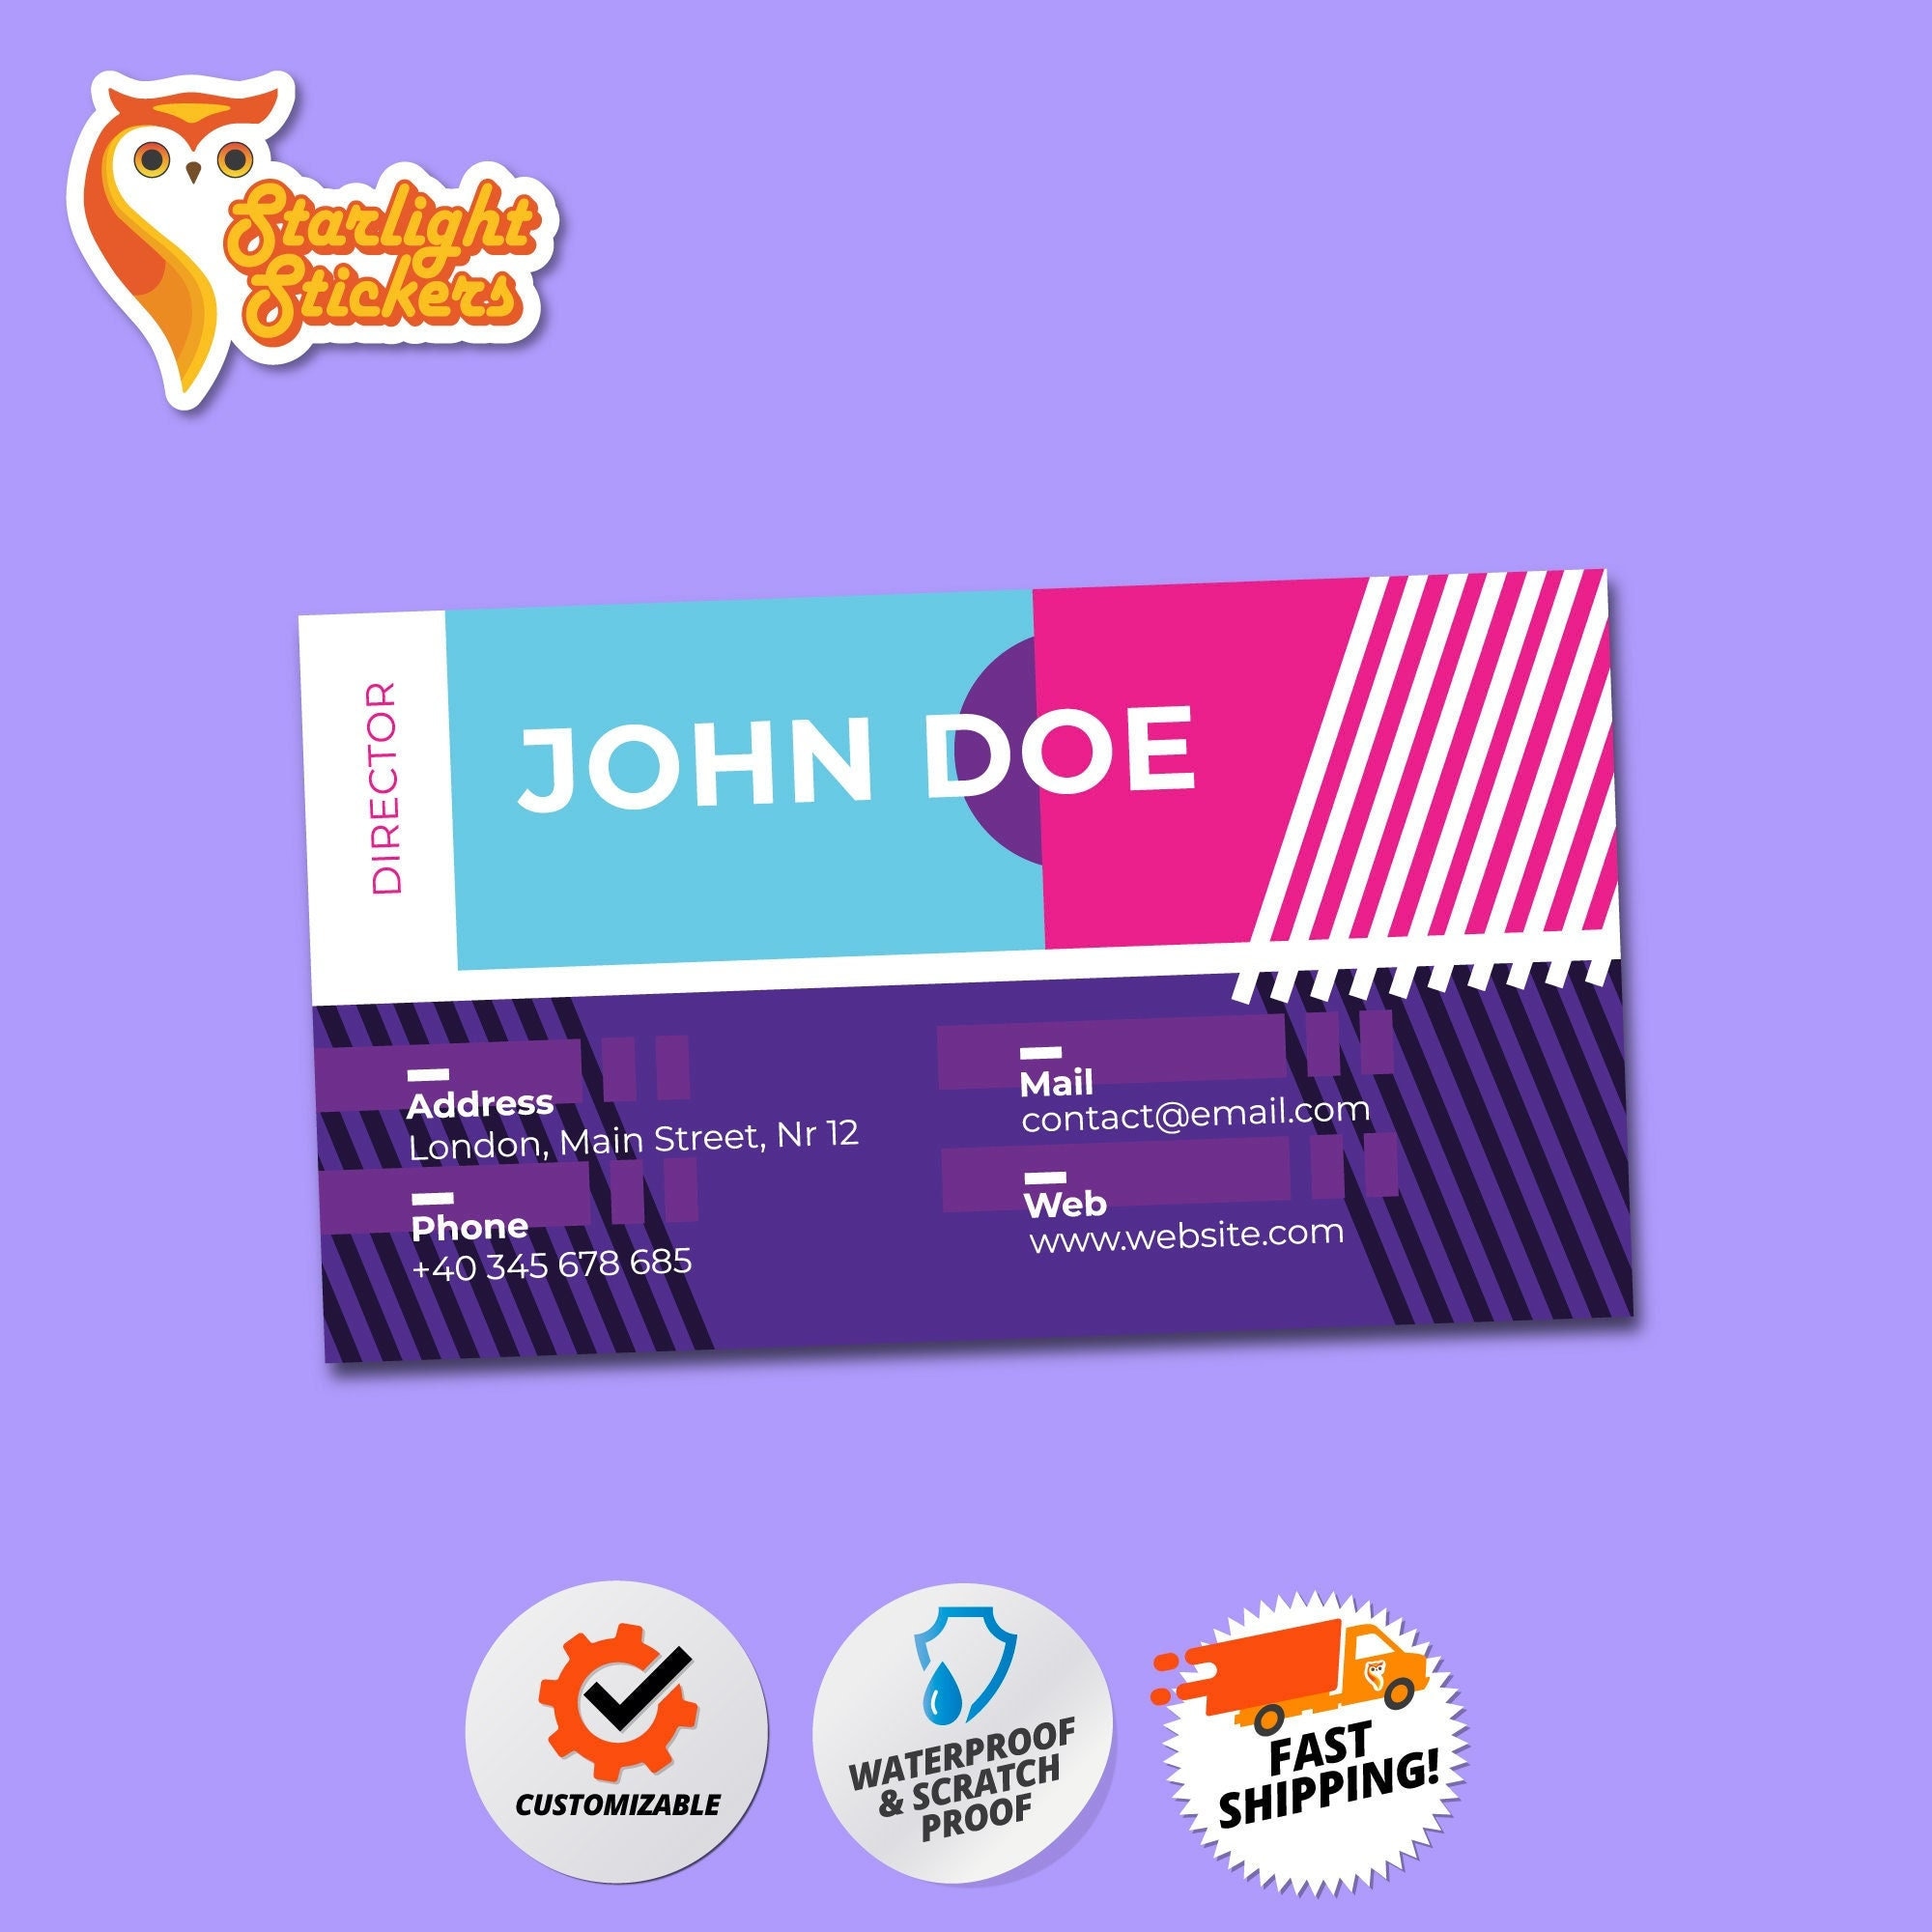 John Doe Stickers 